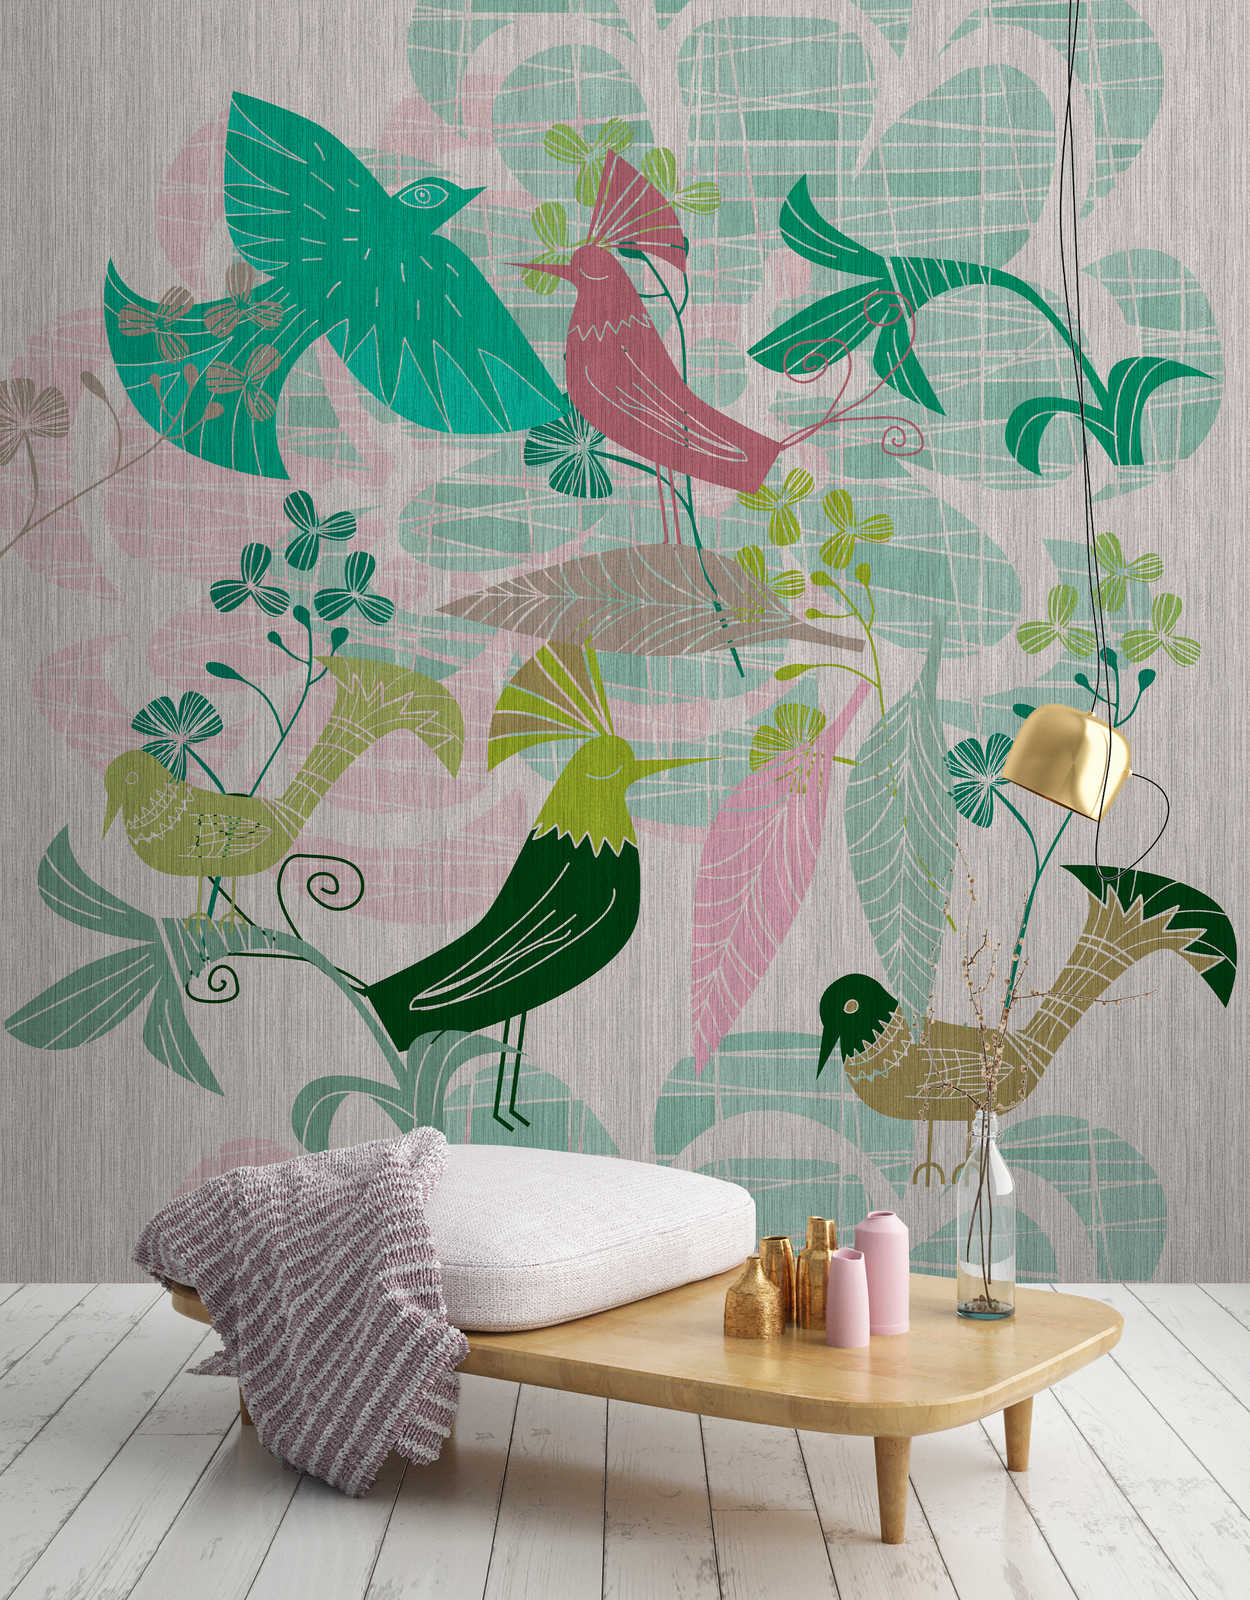             Birdland 3 - Retro Stijl Groen & Roze Vogels Patroon Behang
        